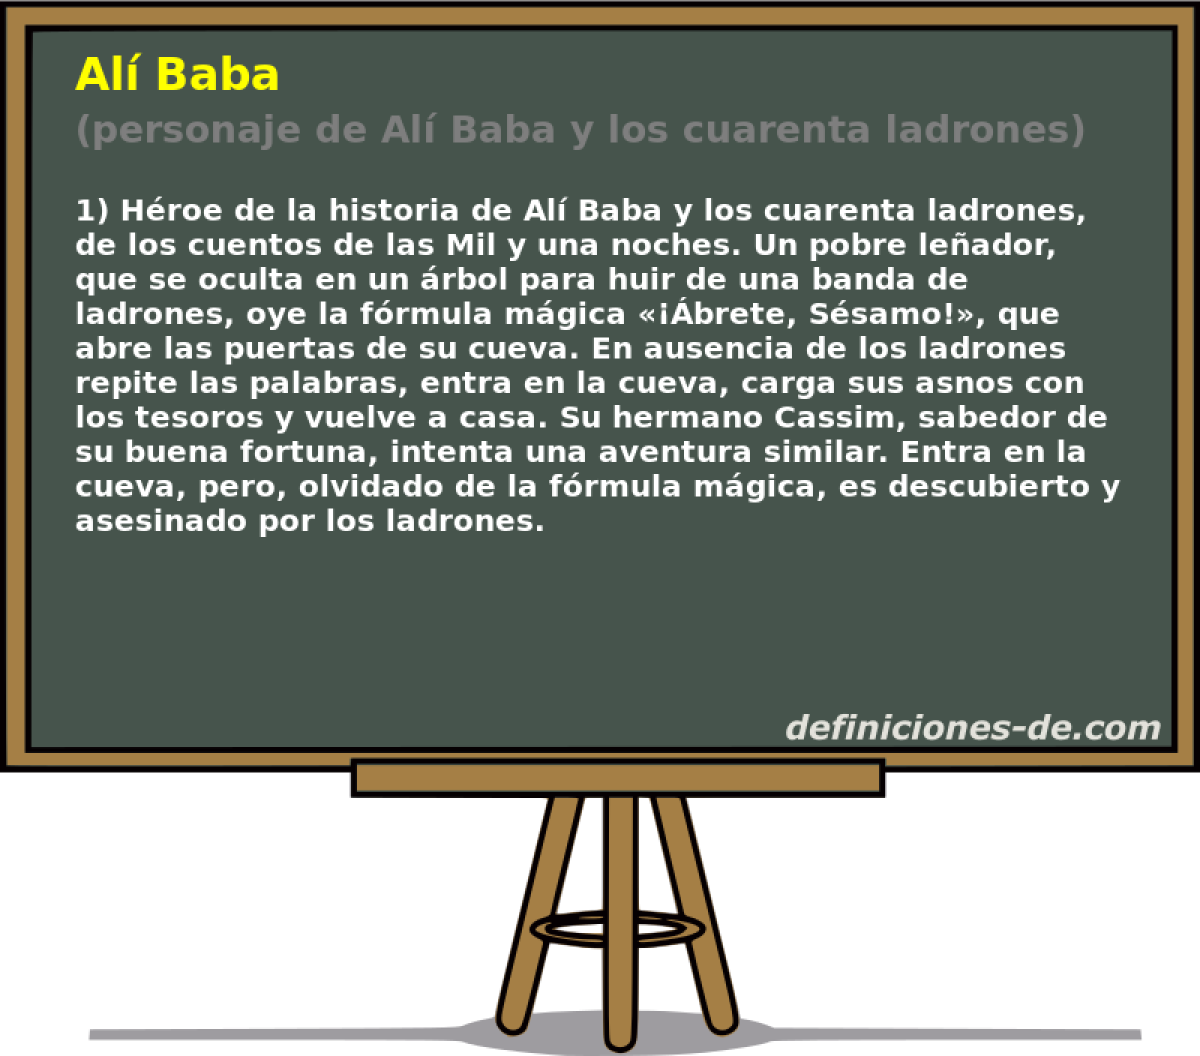 Al Baba (personaje de Al Baba y los cuarenta ladrones)